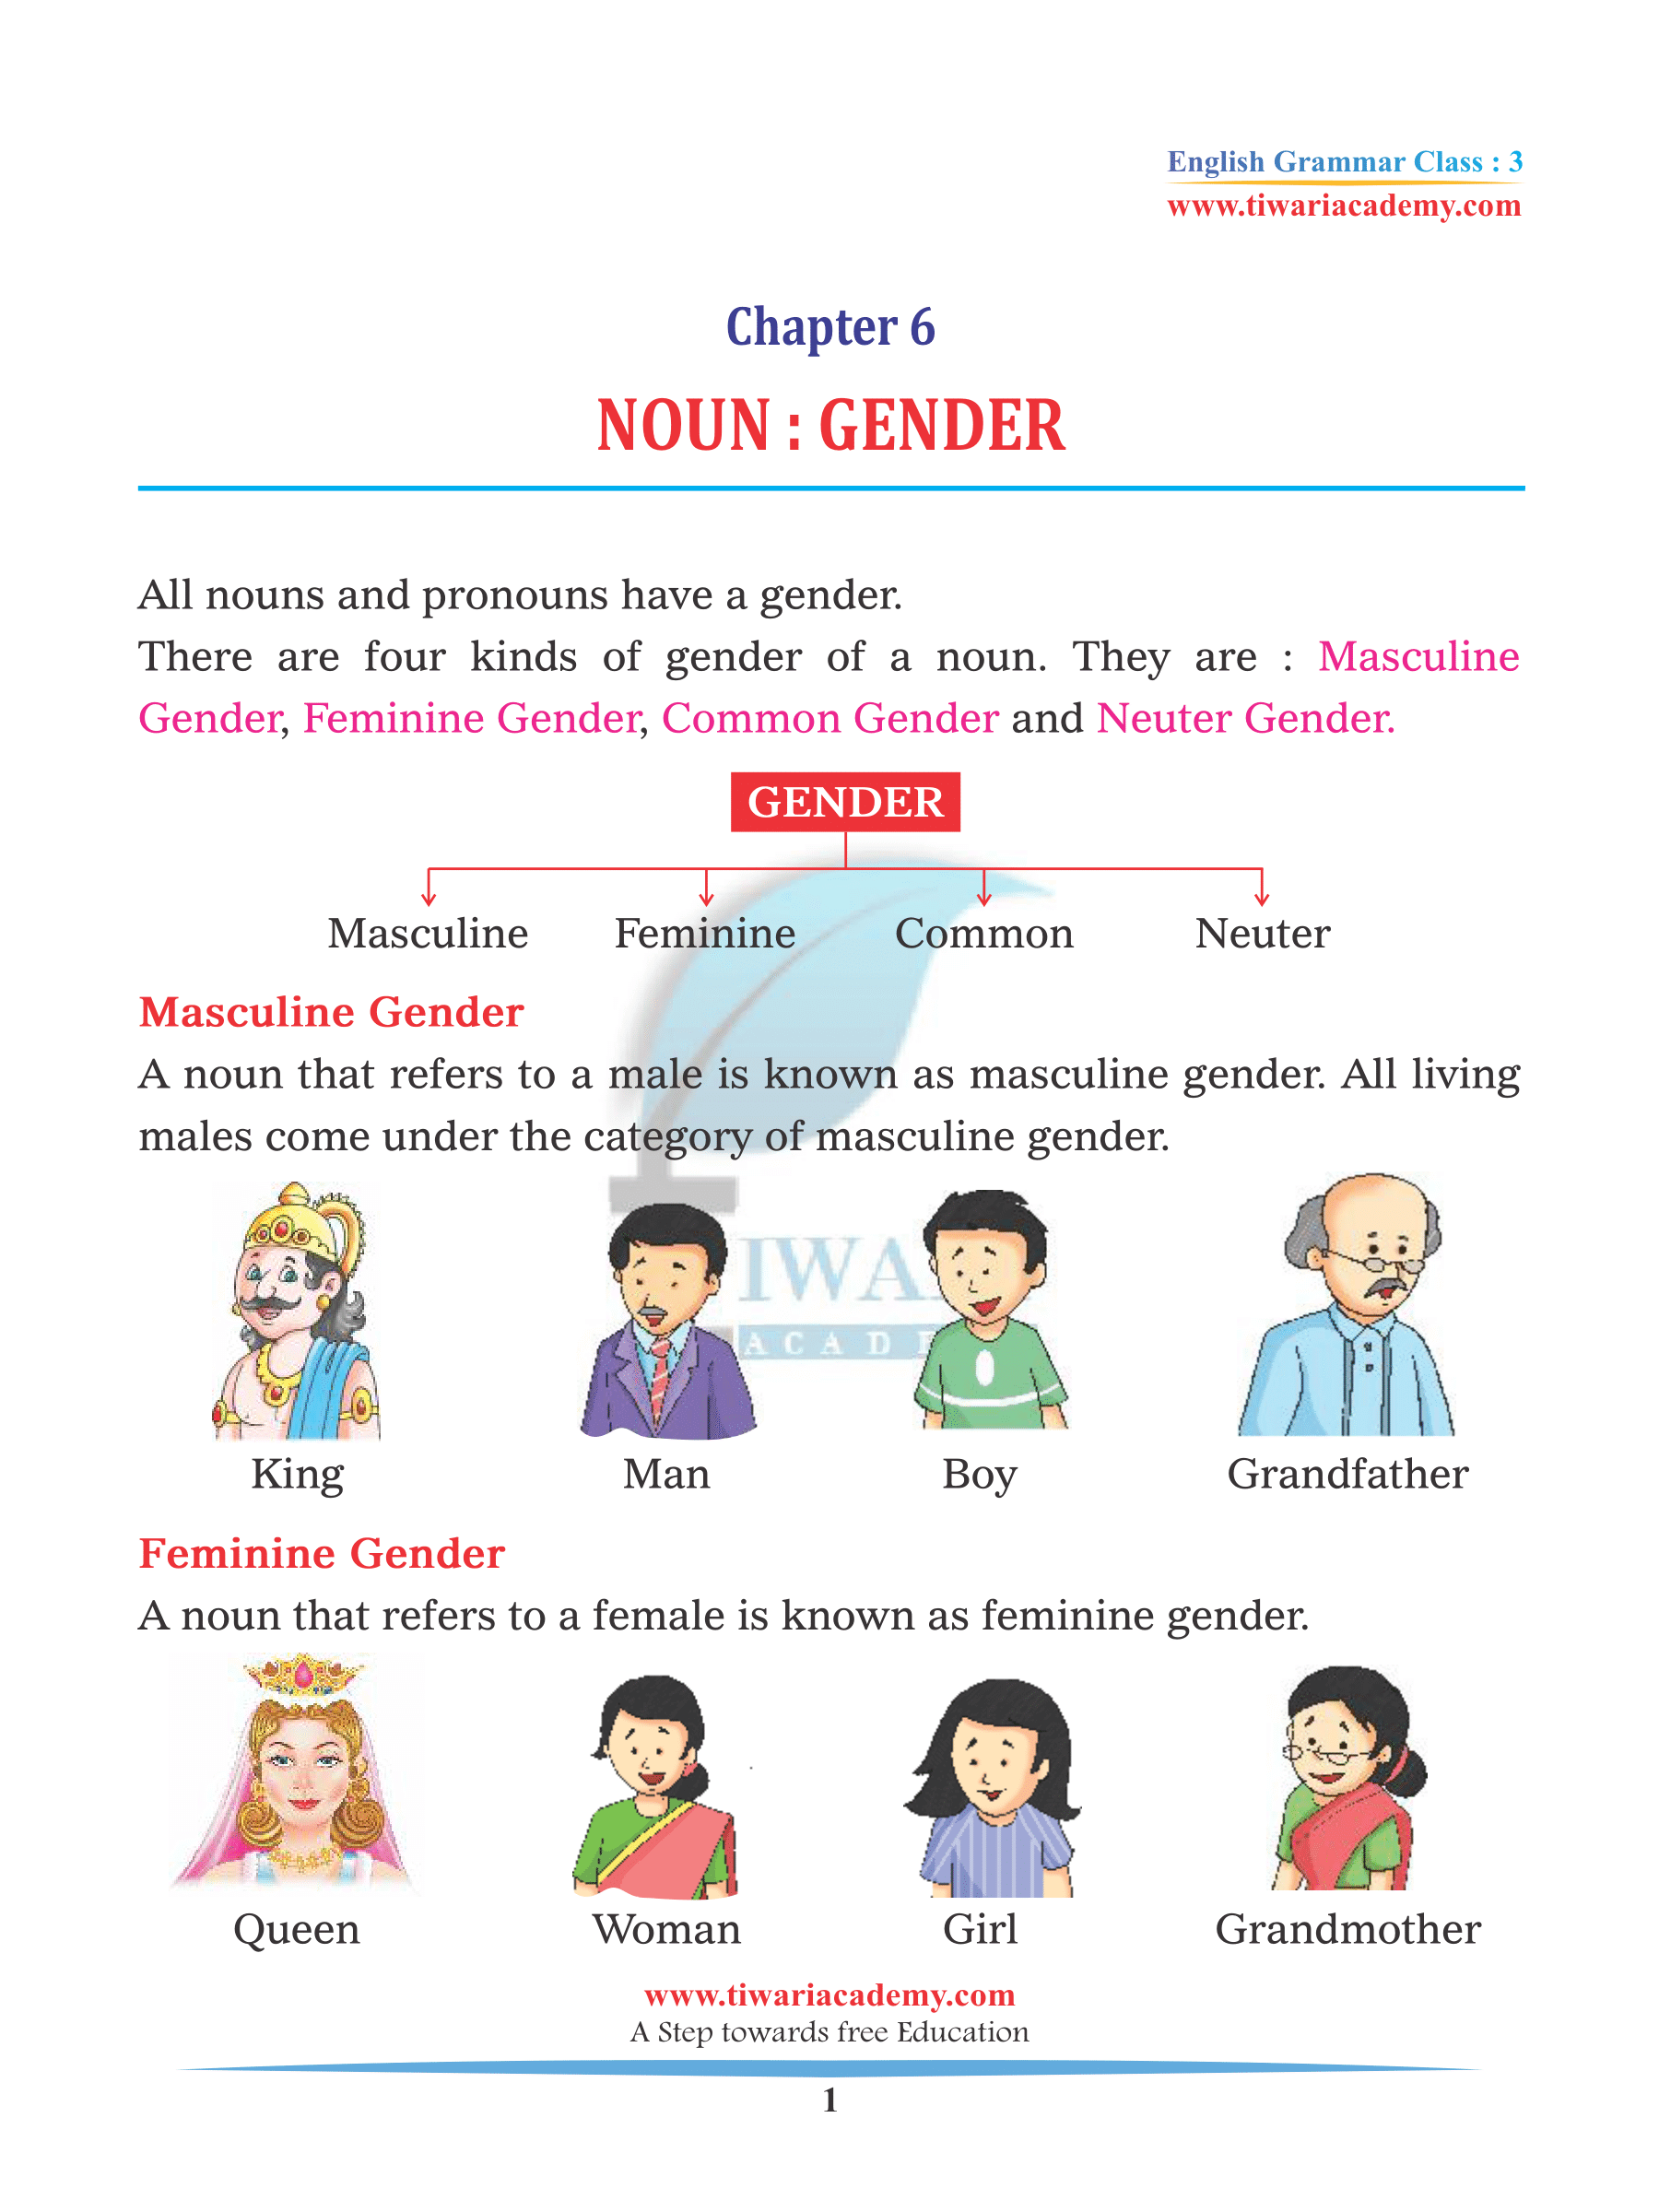 Class 3 English Grammar Chapter 6 Gender